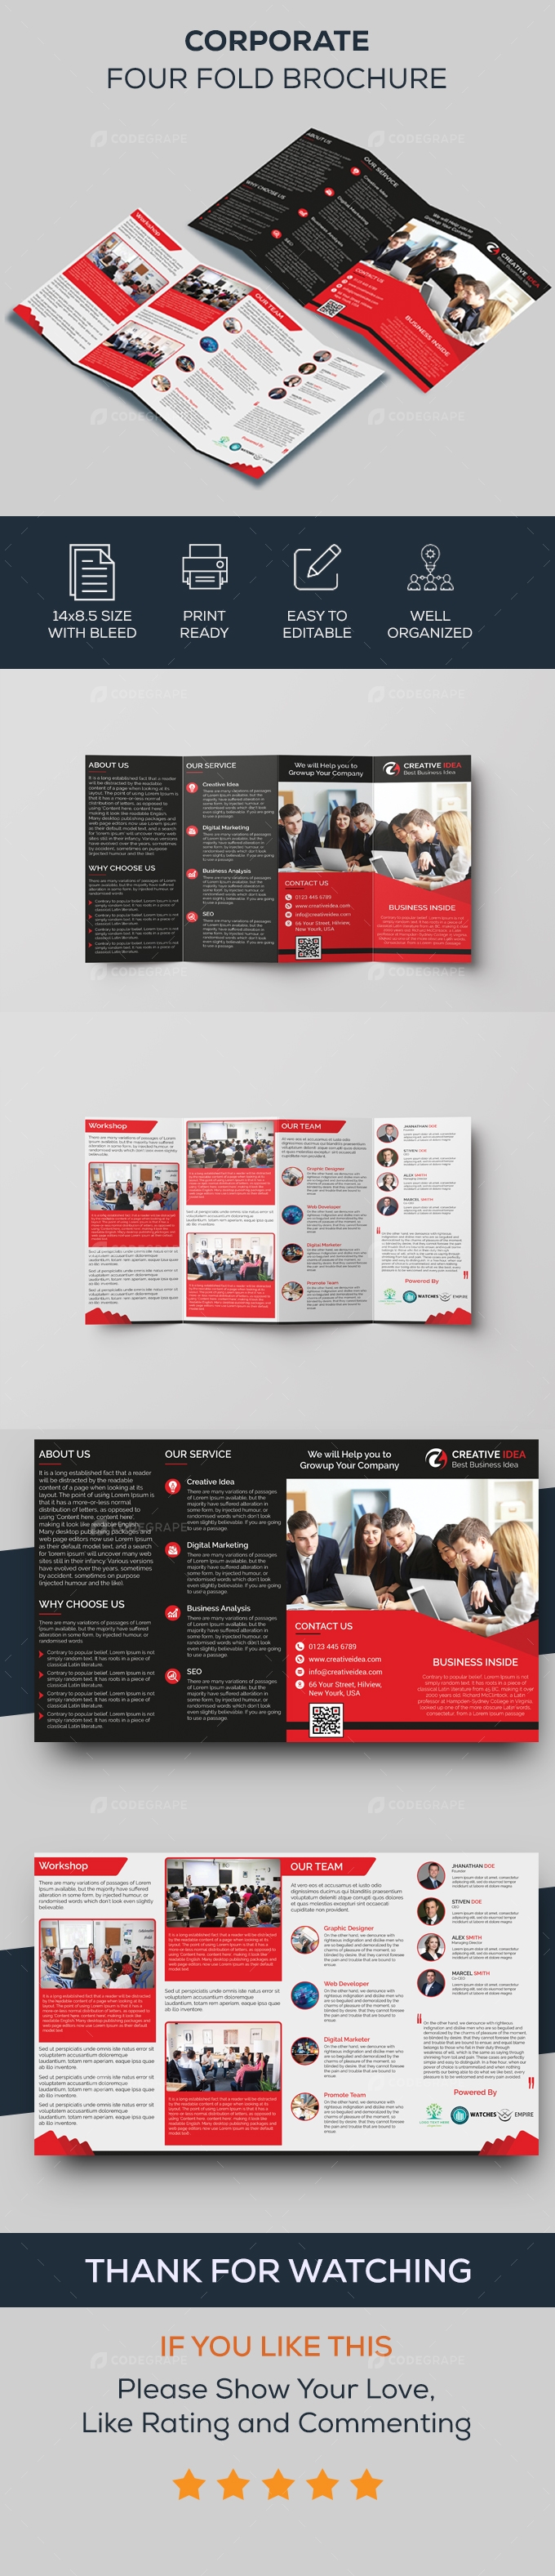 Corporate Four Fold Brochure